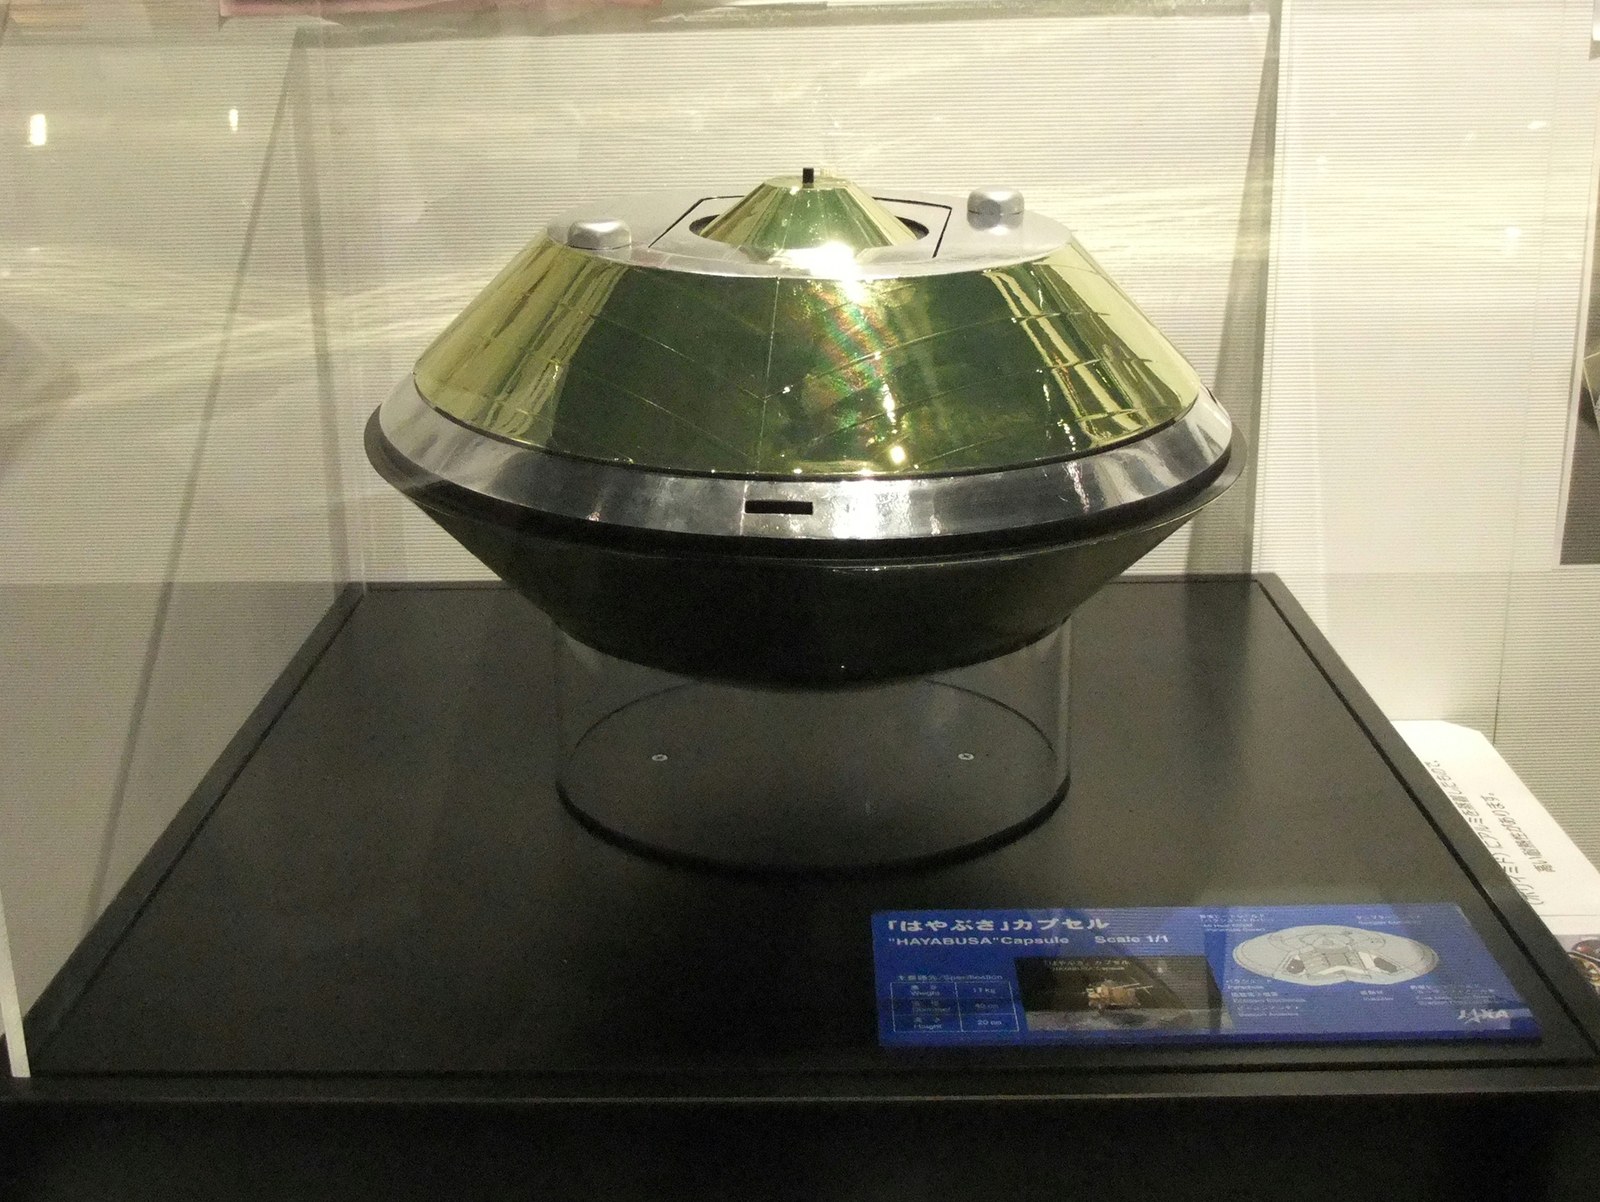 Hayabusa sample capsule